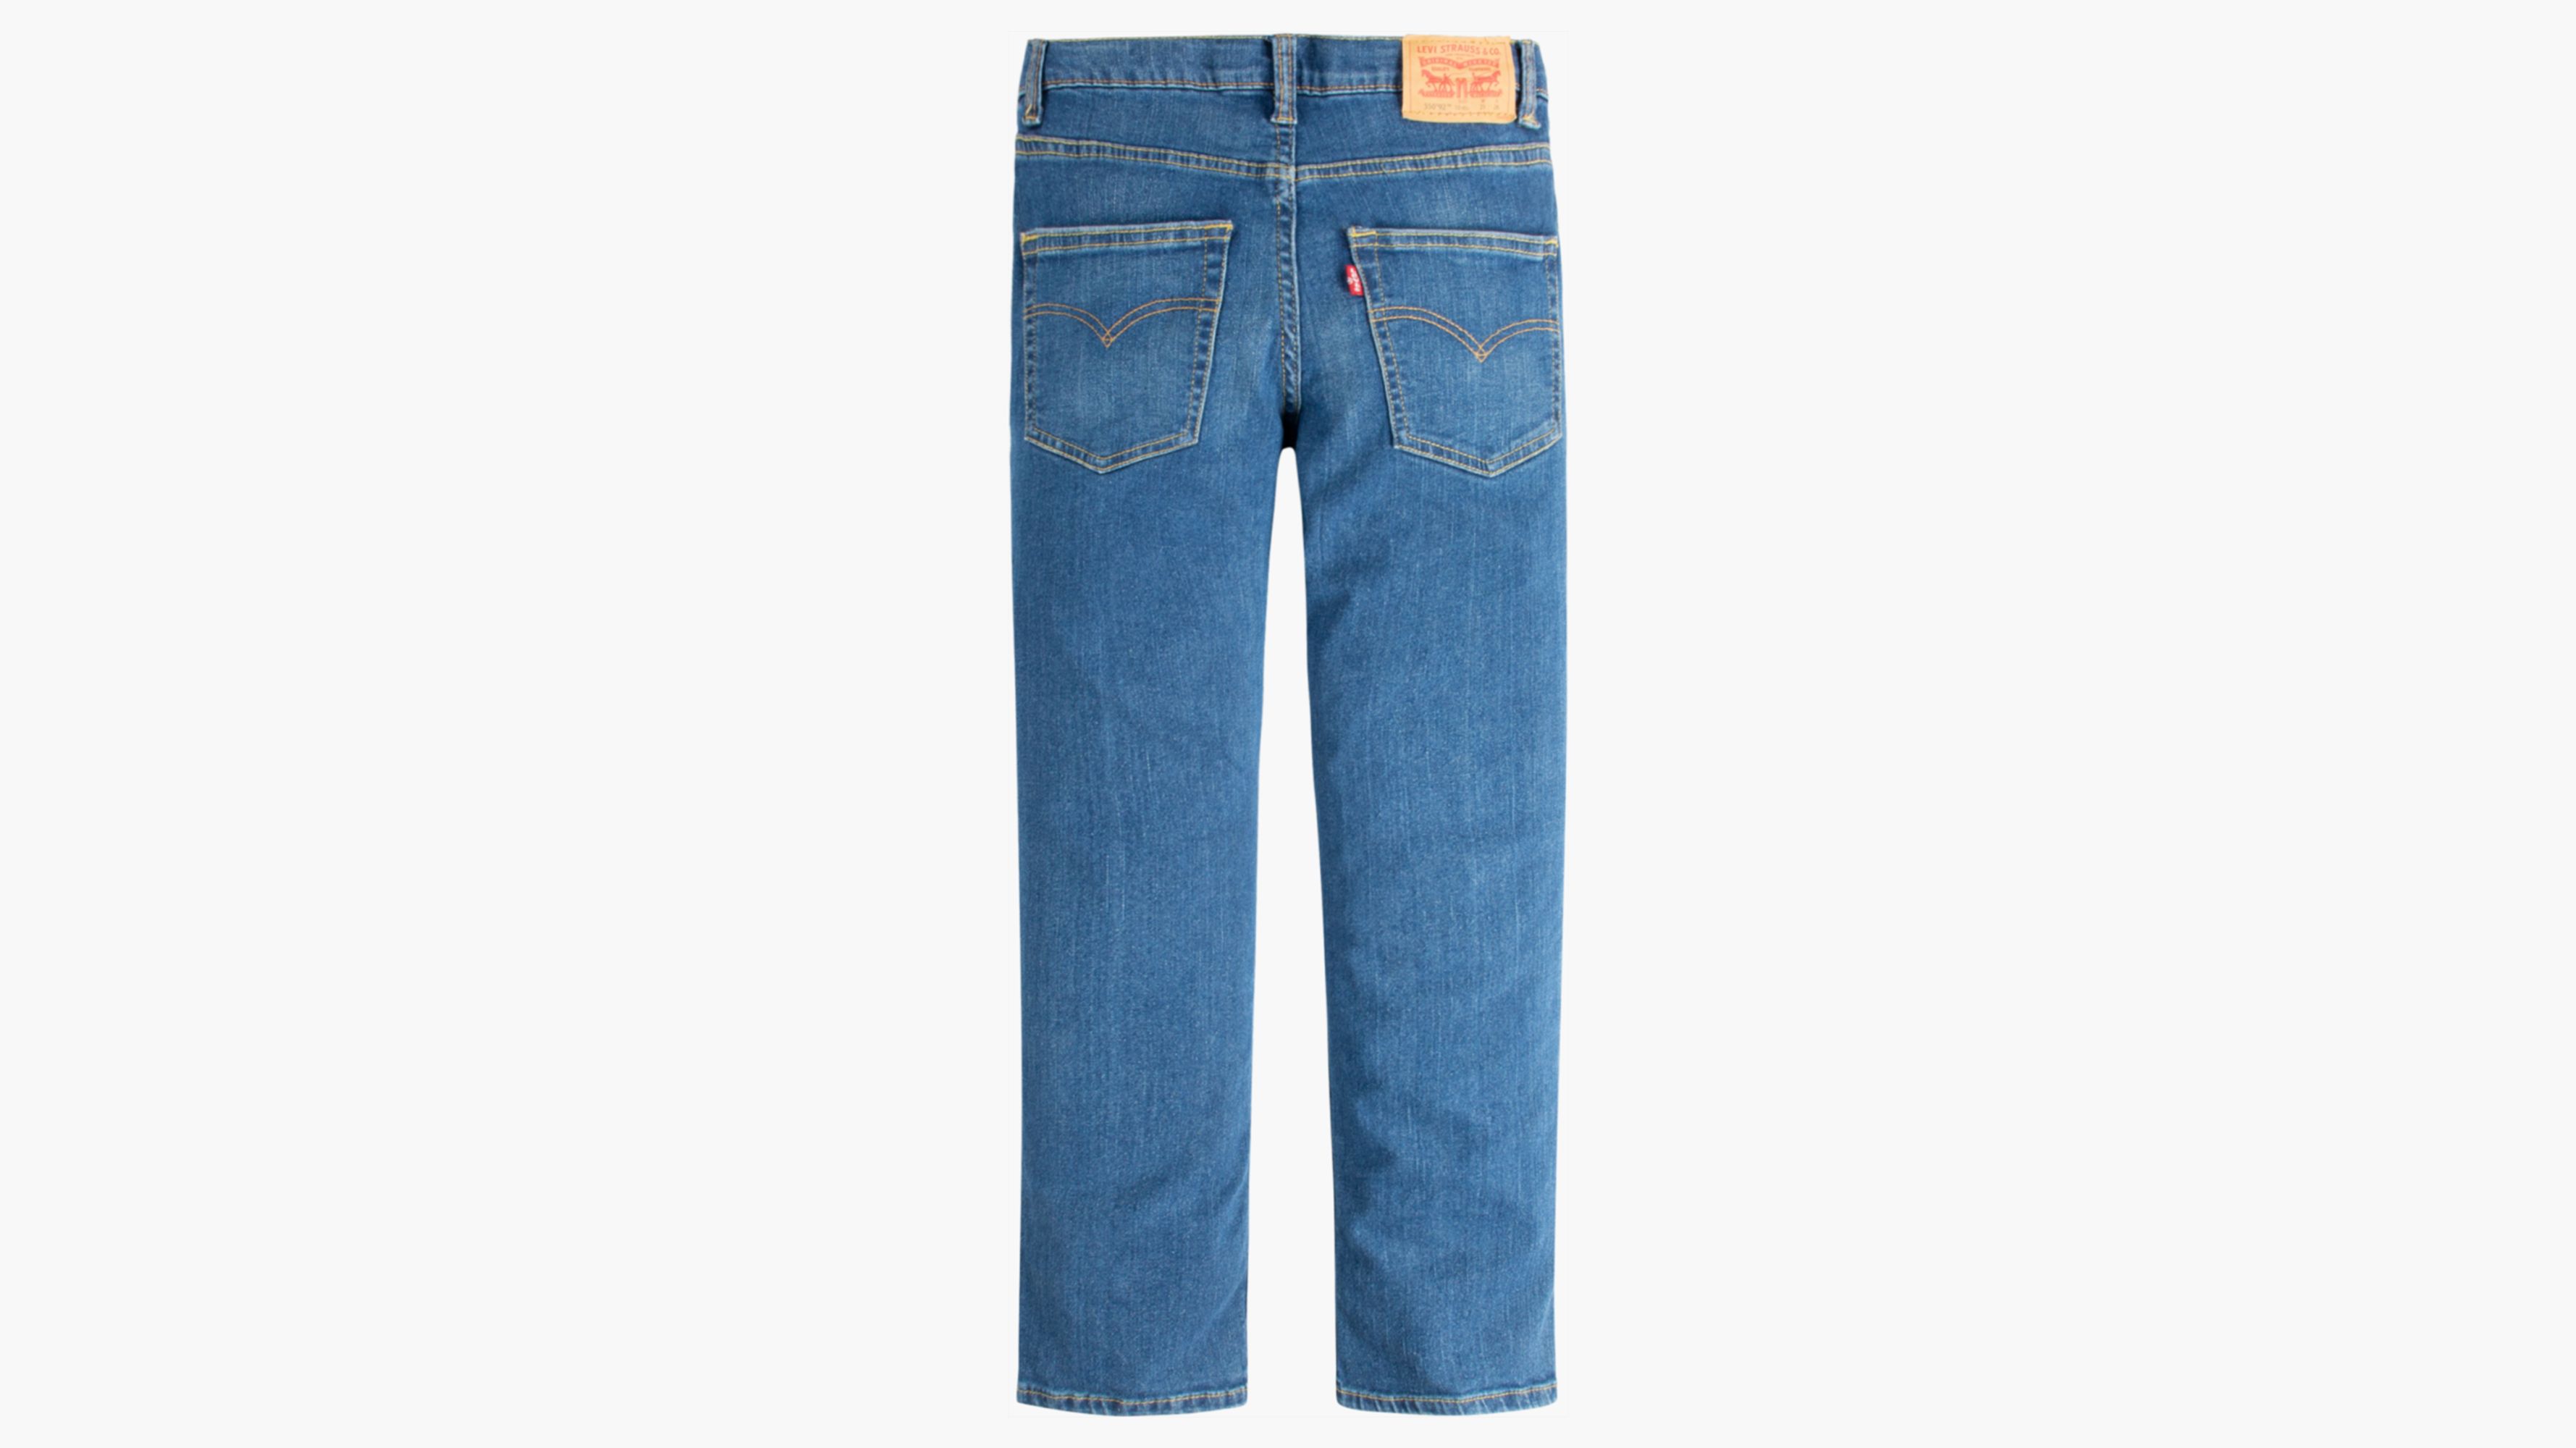 550™ '92 Fit Jeans Big Boys 8-20 - Light Wash | Levi's® US